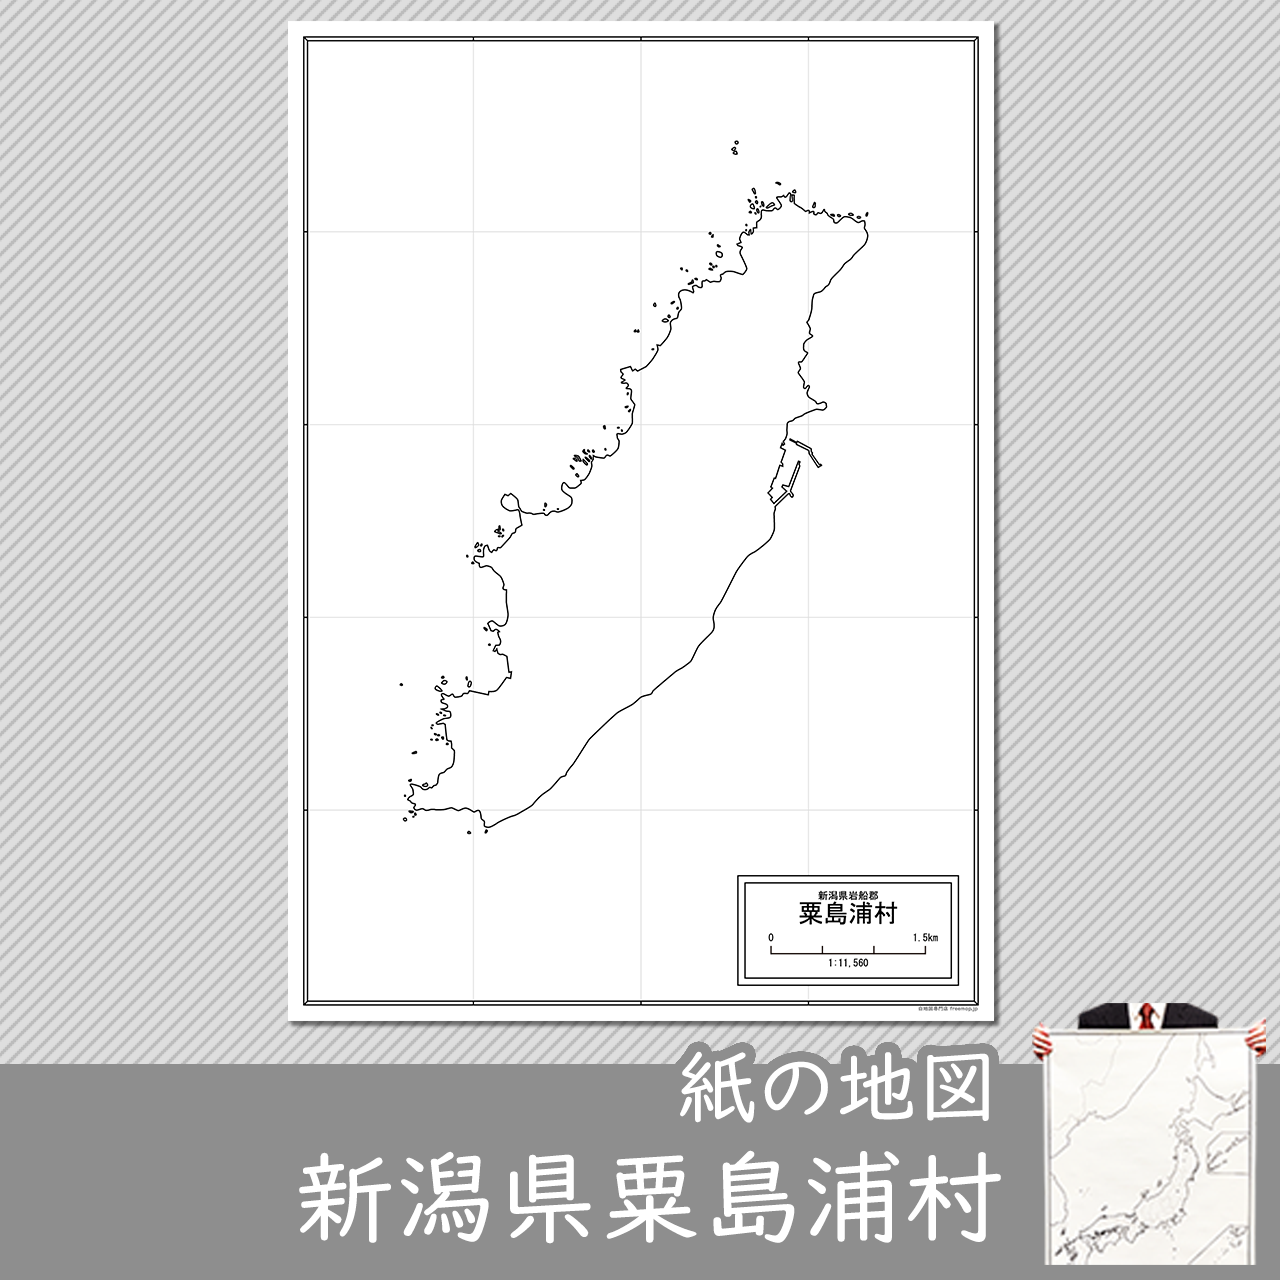 粟島浦村の紙の白地図